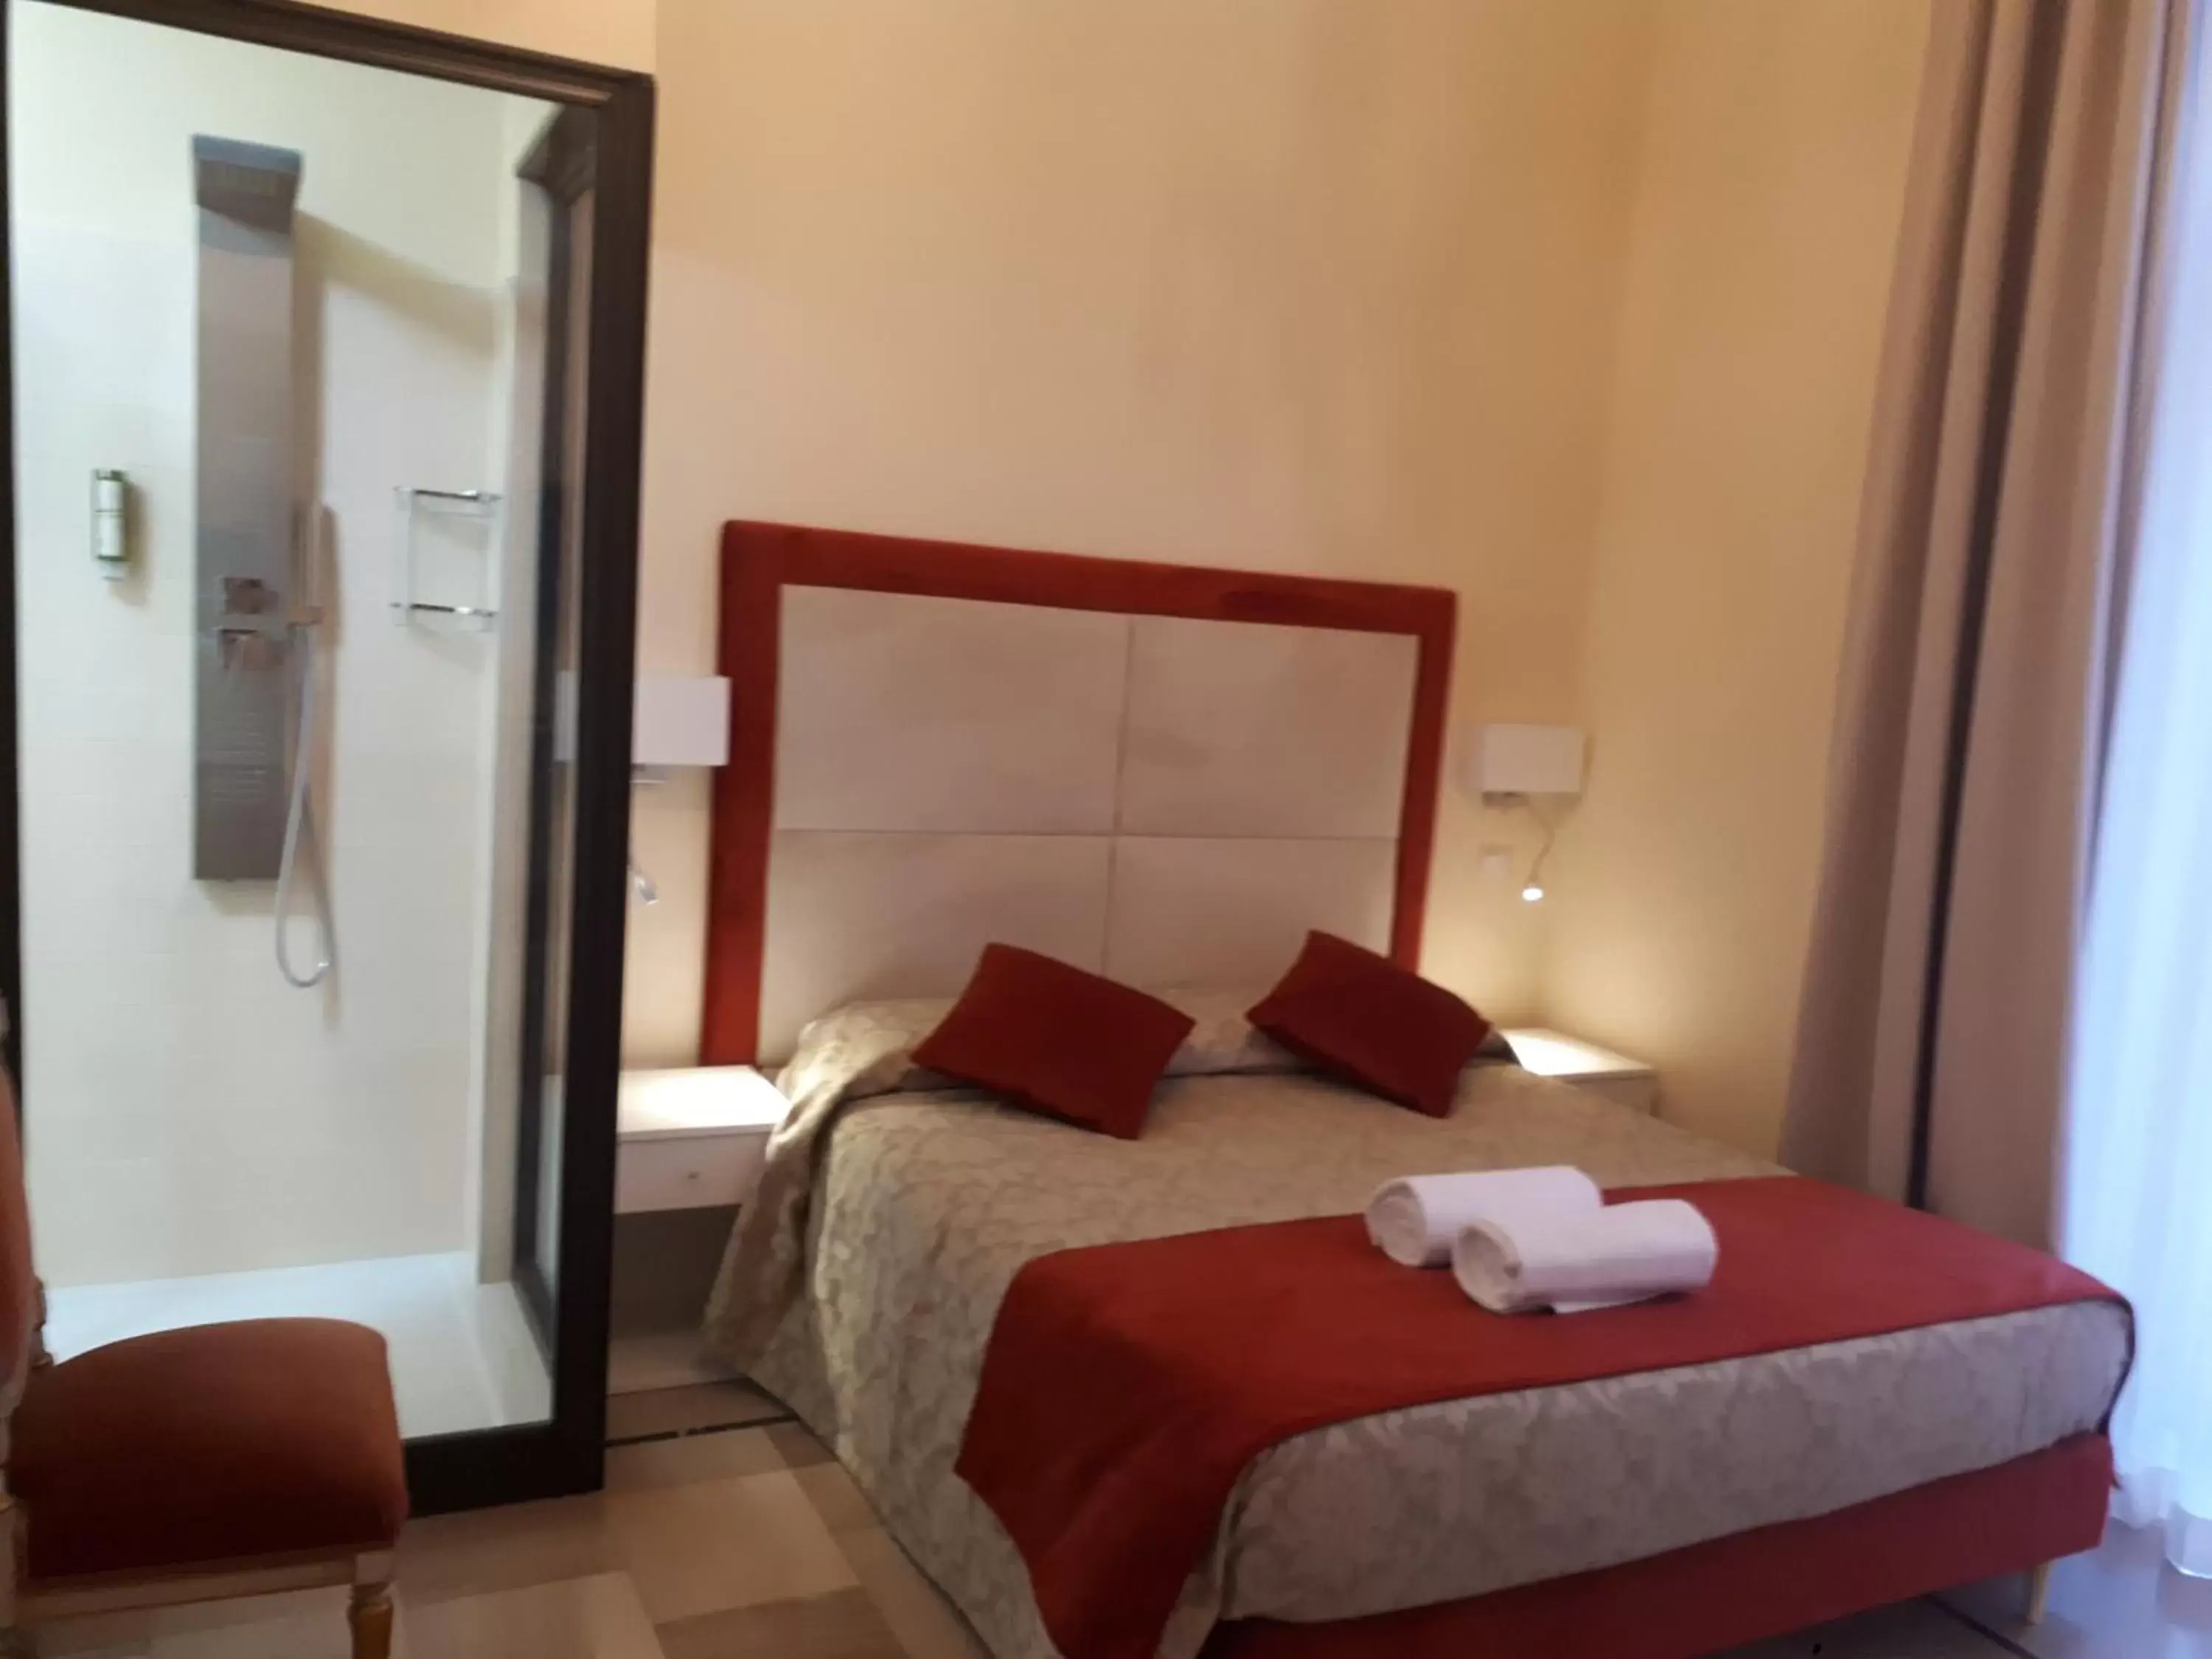 Double Room with Balcony in Dimora Charleston Lecce parcheggio privato in loco gratis